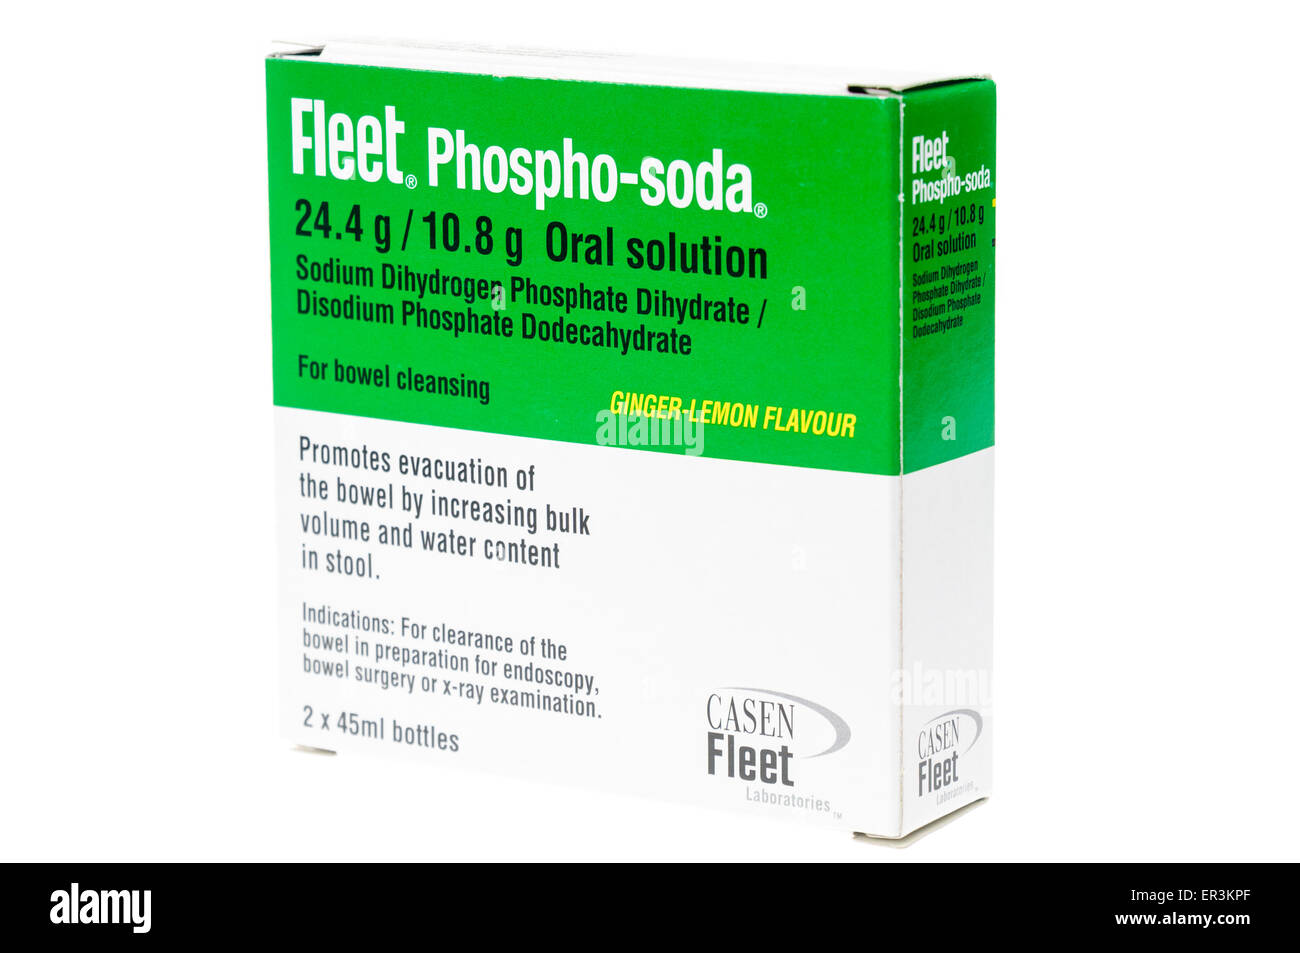 Fleet phospho-soda bol préparation oral solution utilisée pour effacer les intestins avant de procédures telles que la colonoscopie. Banque D'Images